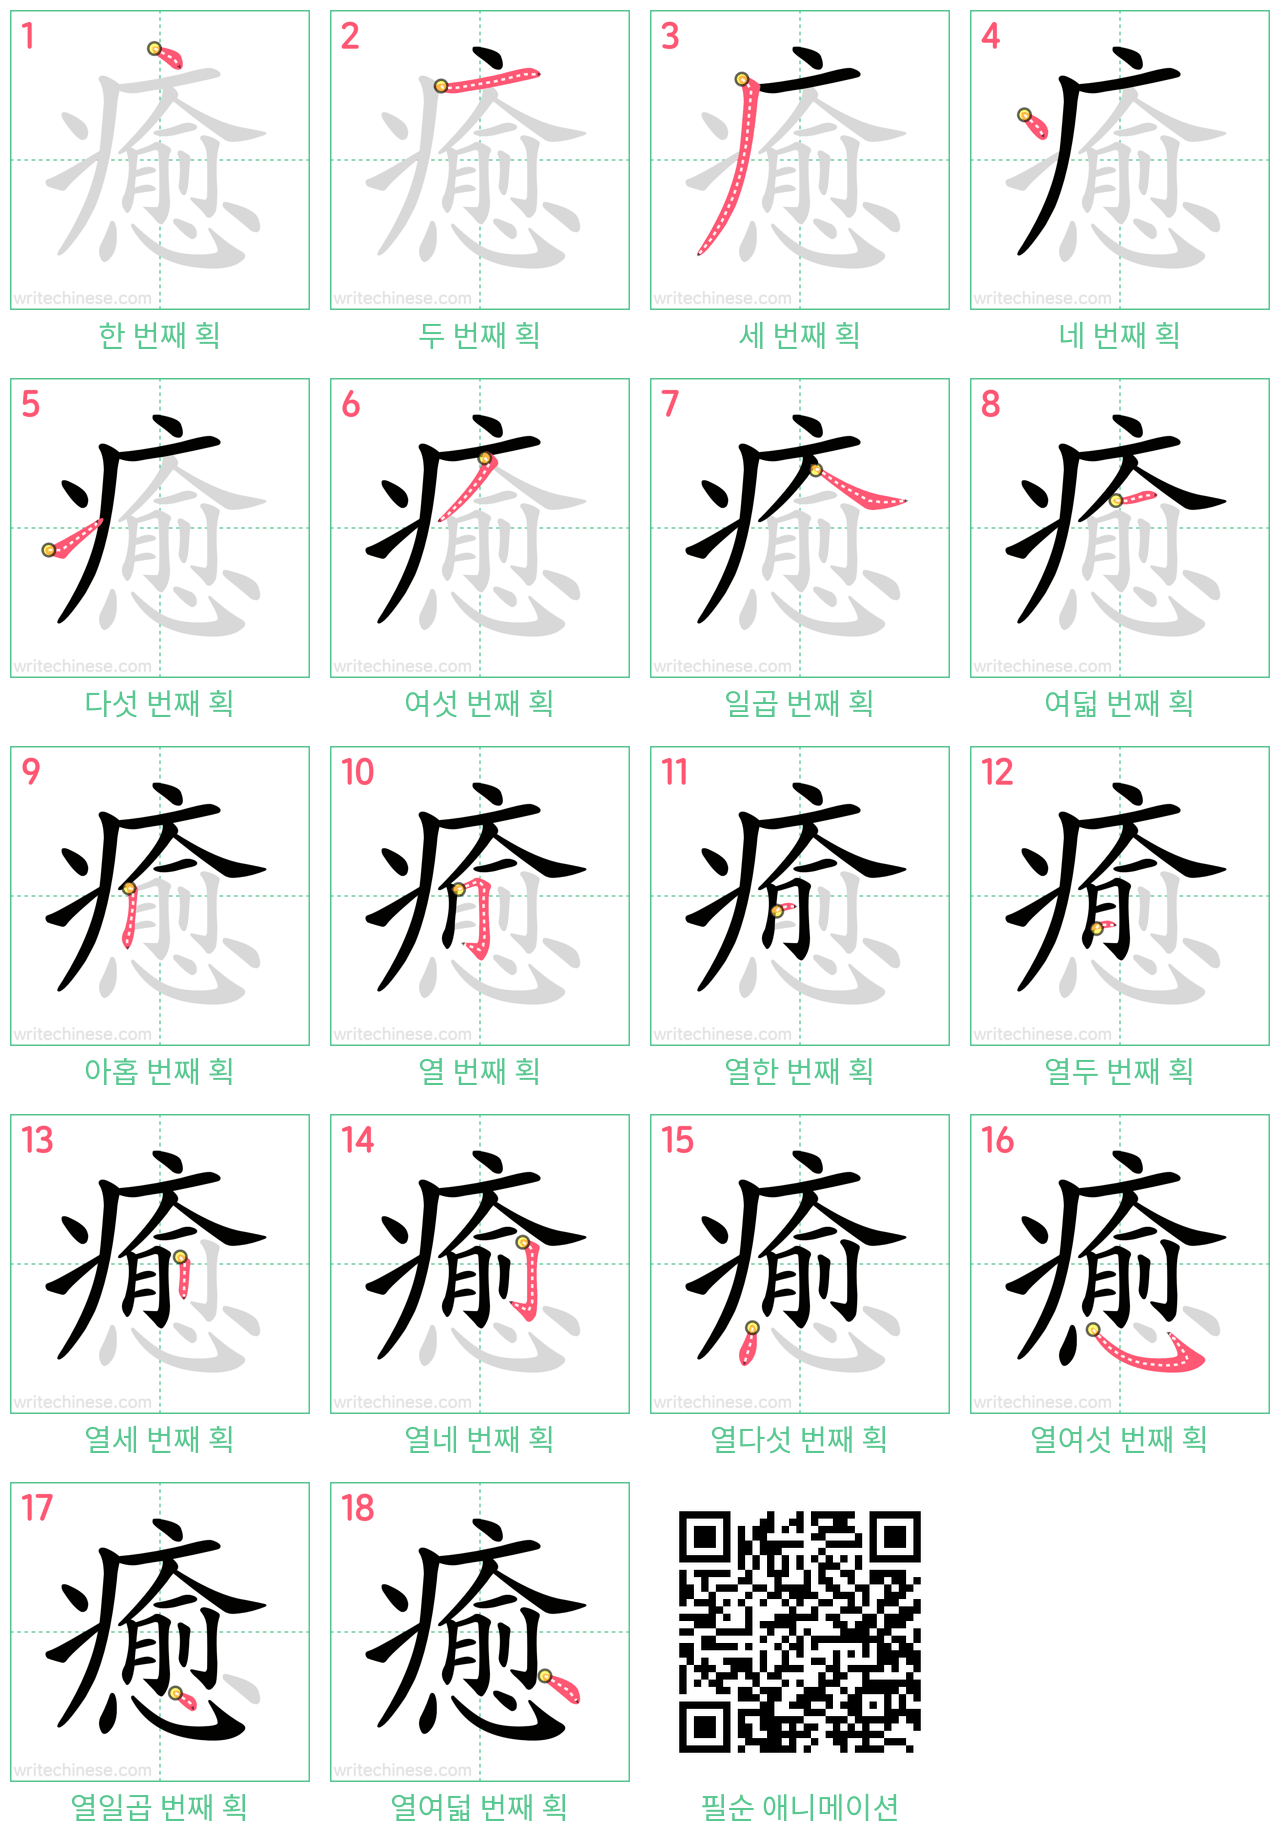 癒 step-by-step stroke order diagrams